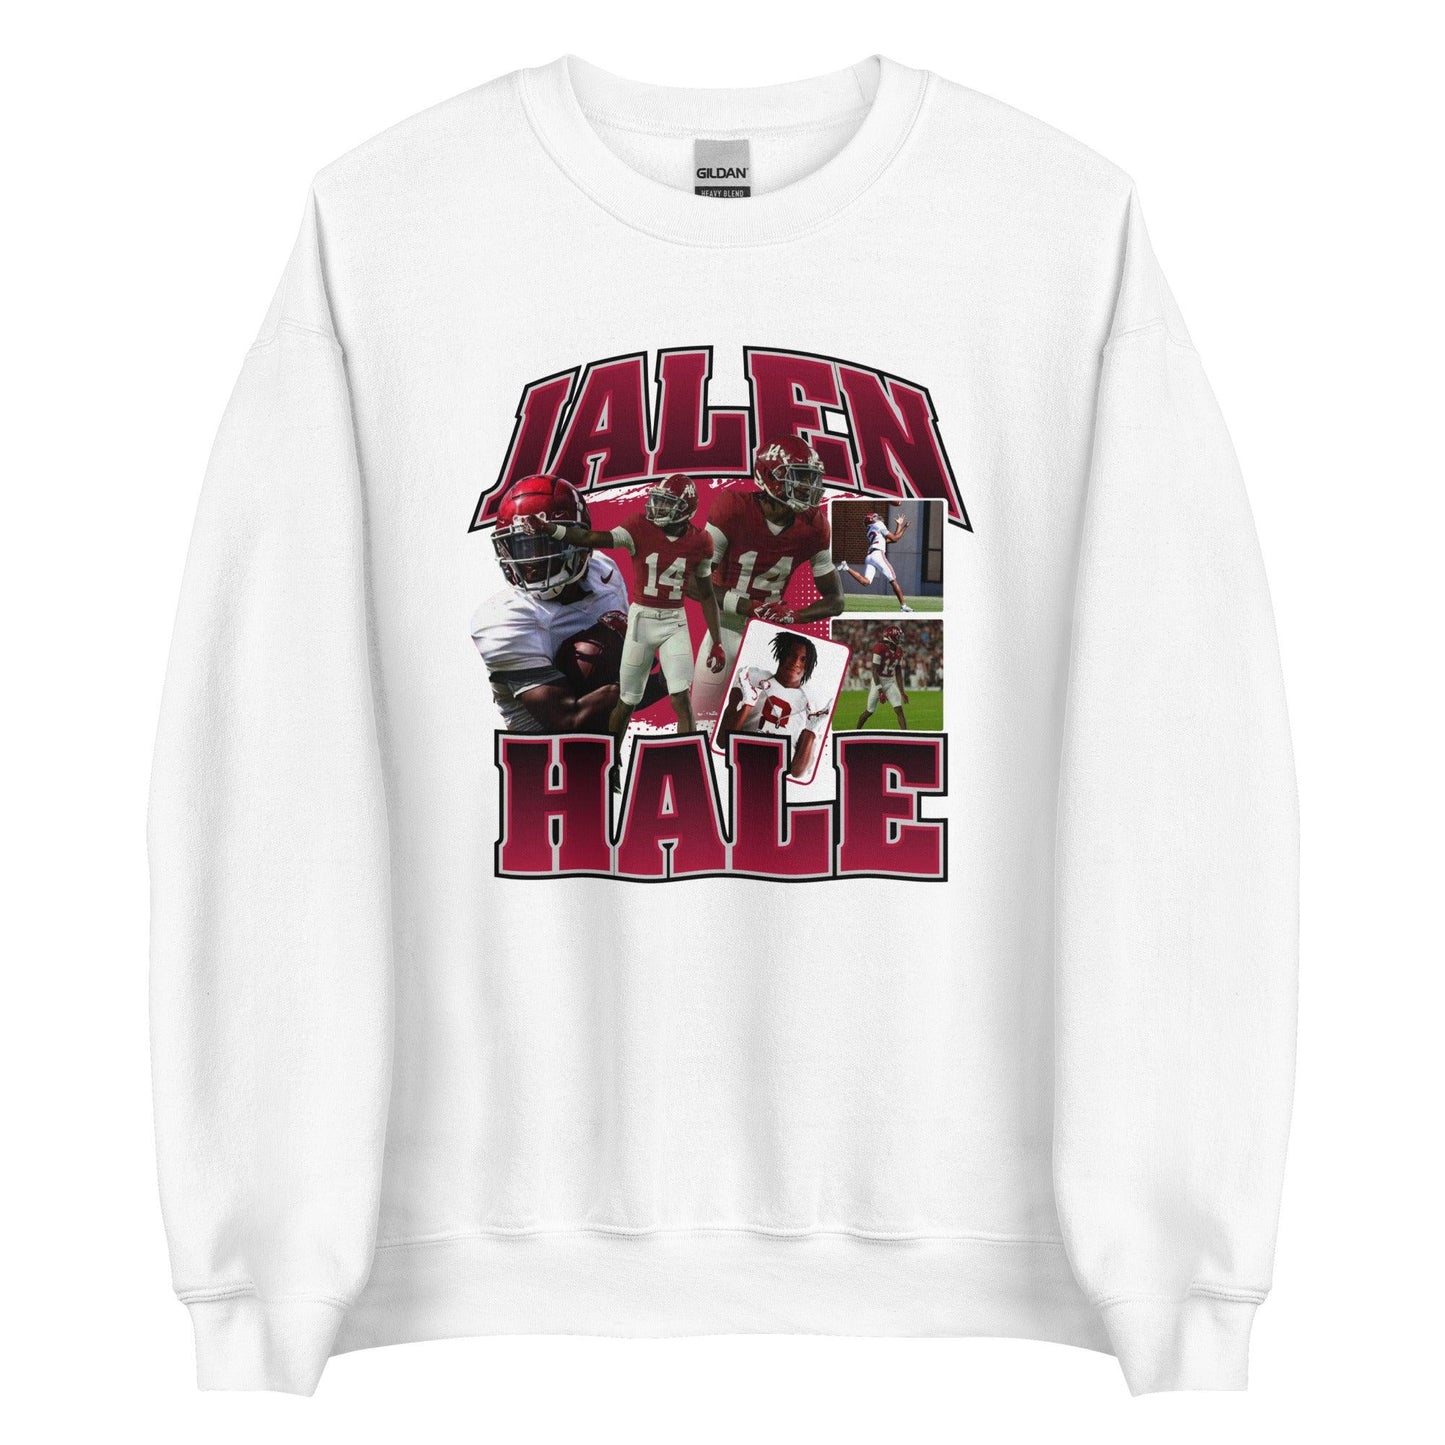 Jalen Hale "Vintage" Sweatshirt - Fan Arch